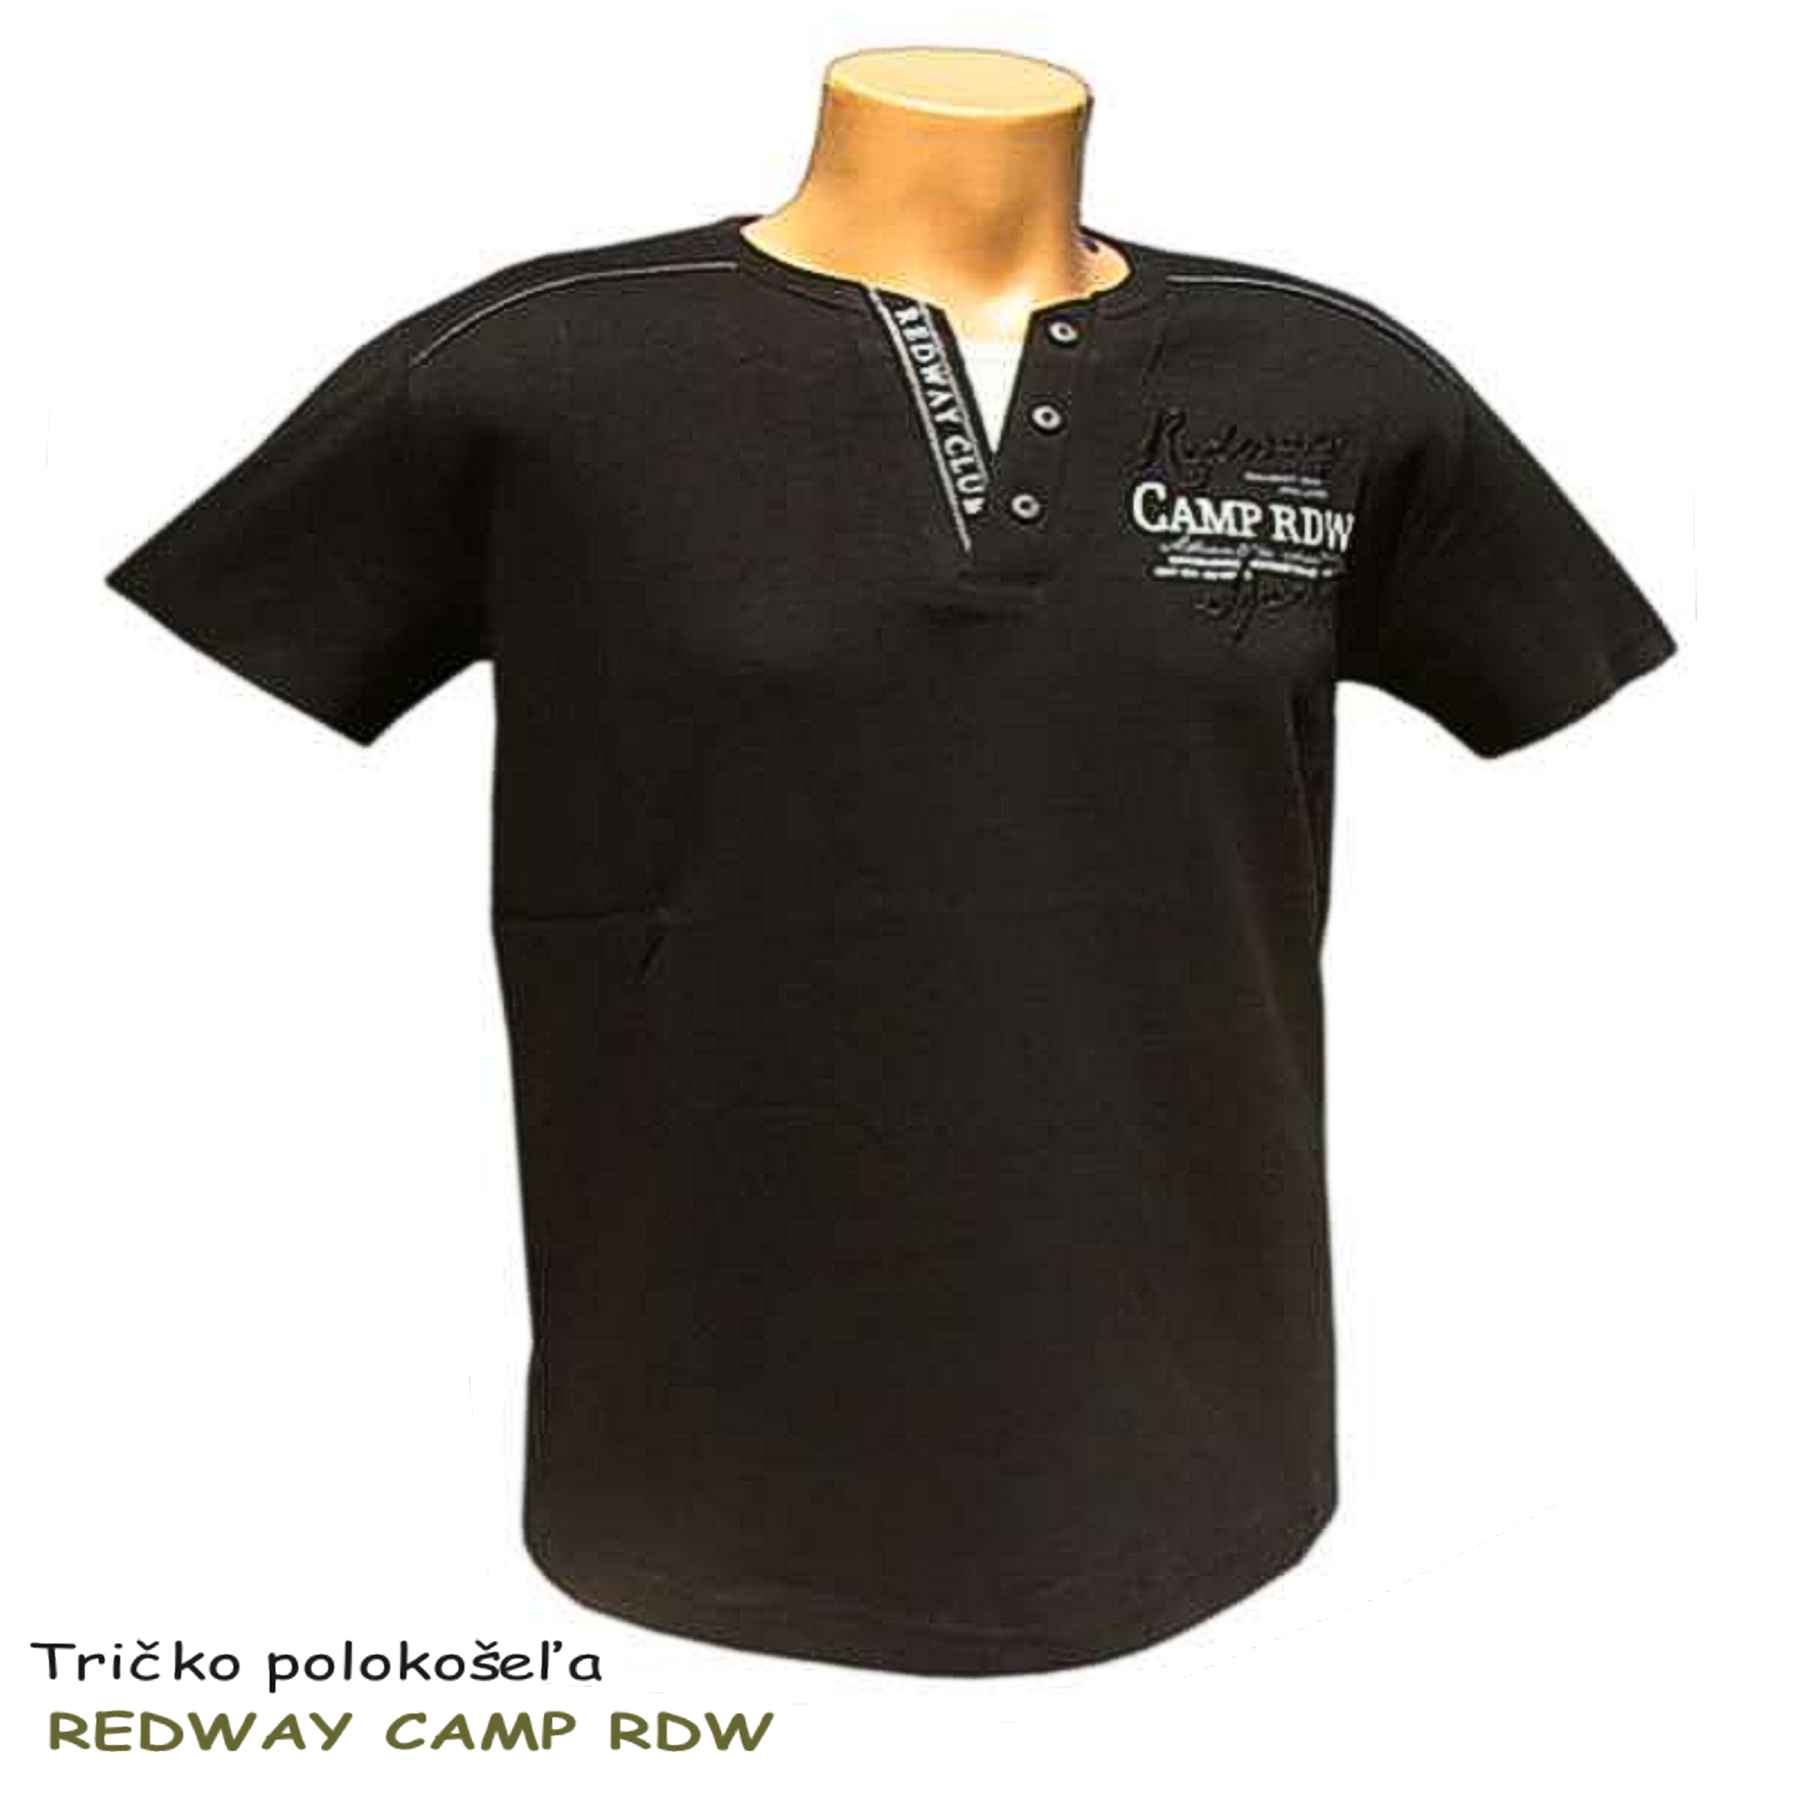 Pánske tričko polokošeľa REDWAY CAMP RDW - veľkoobchod Tifantex